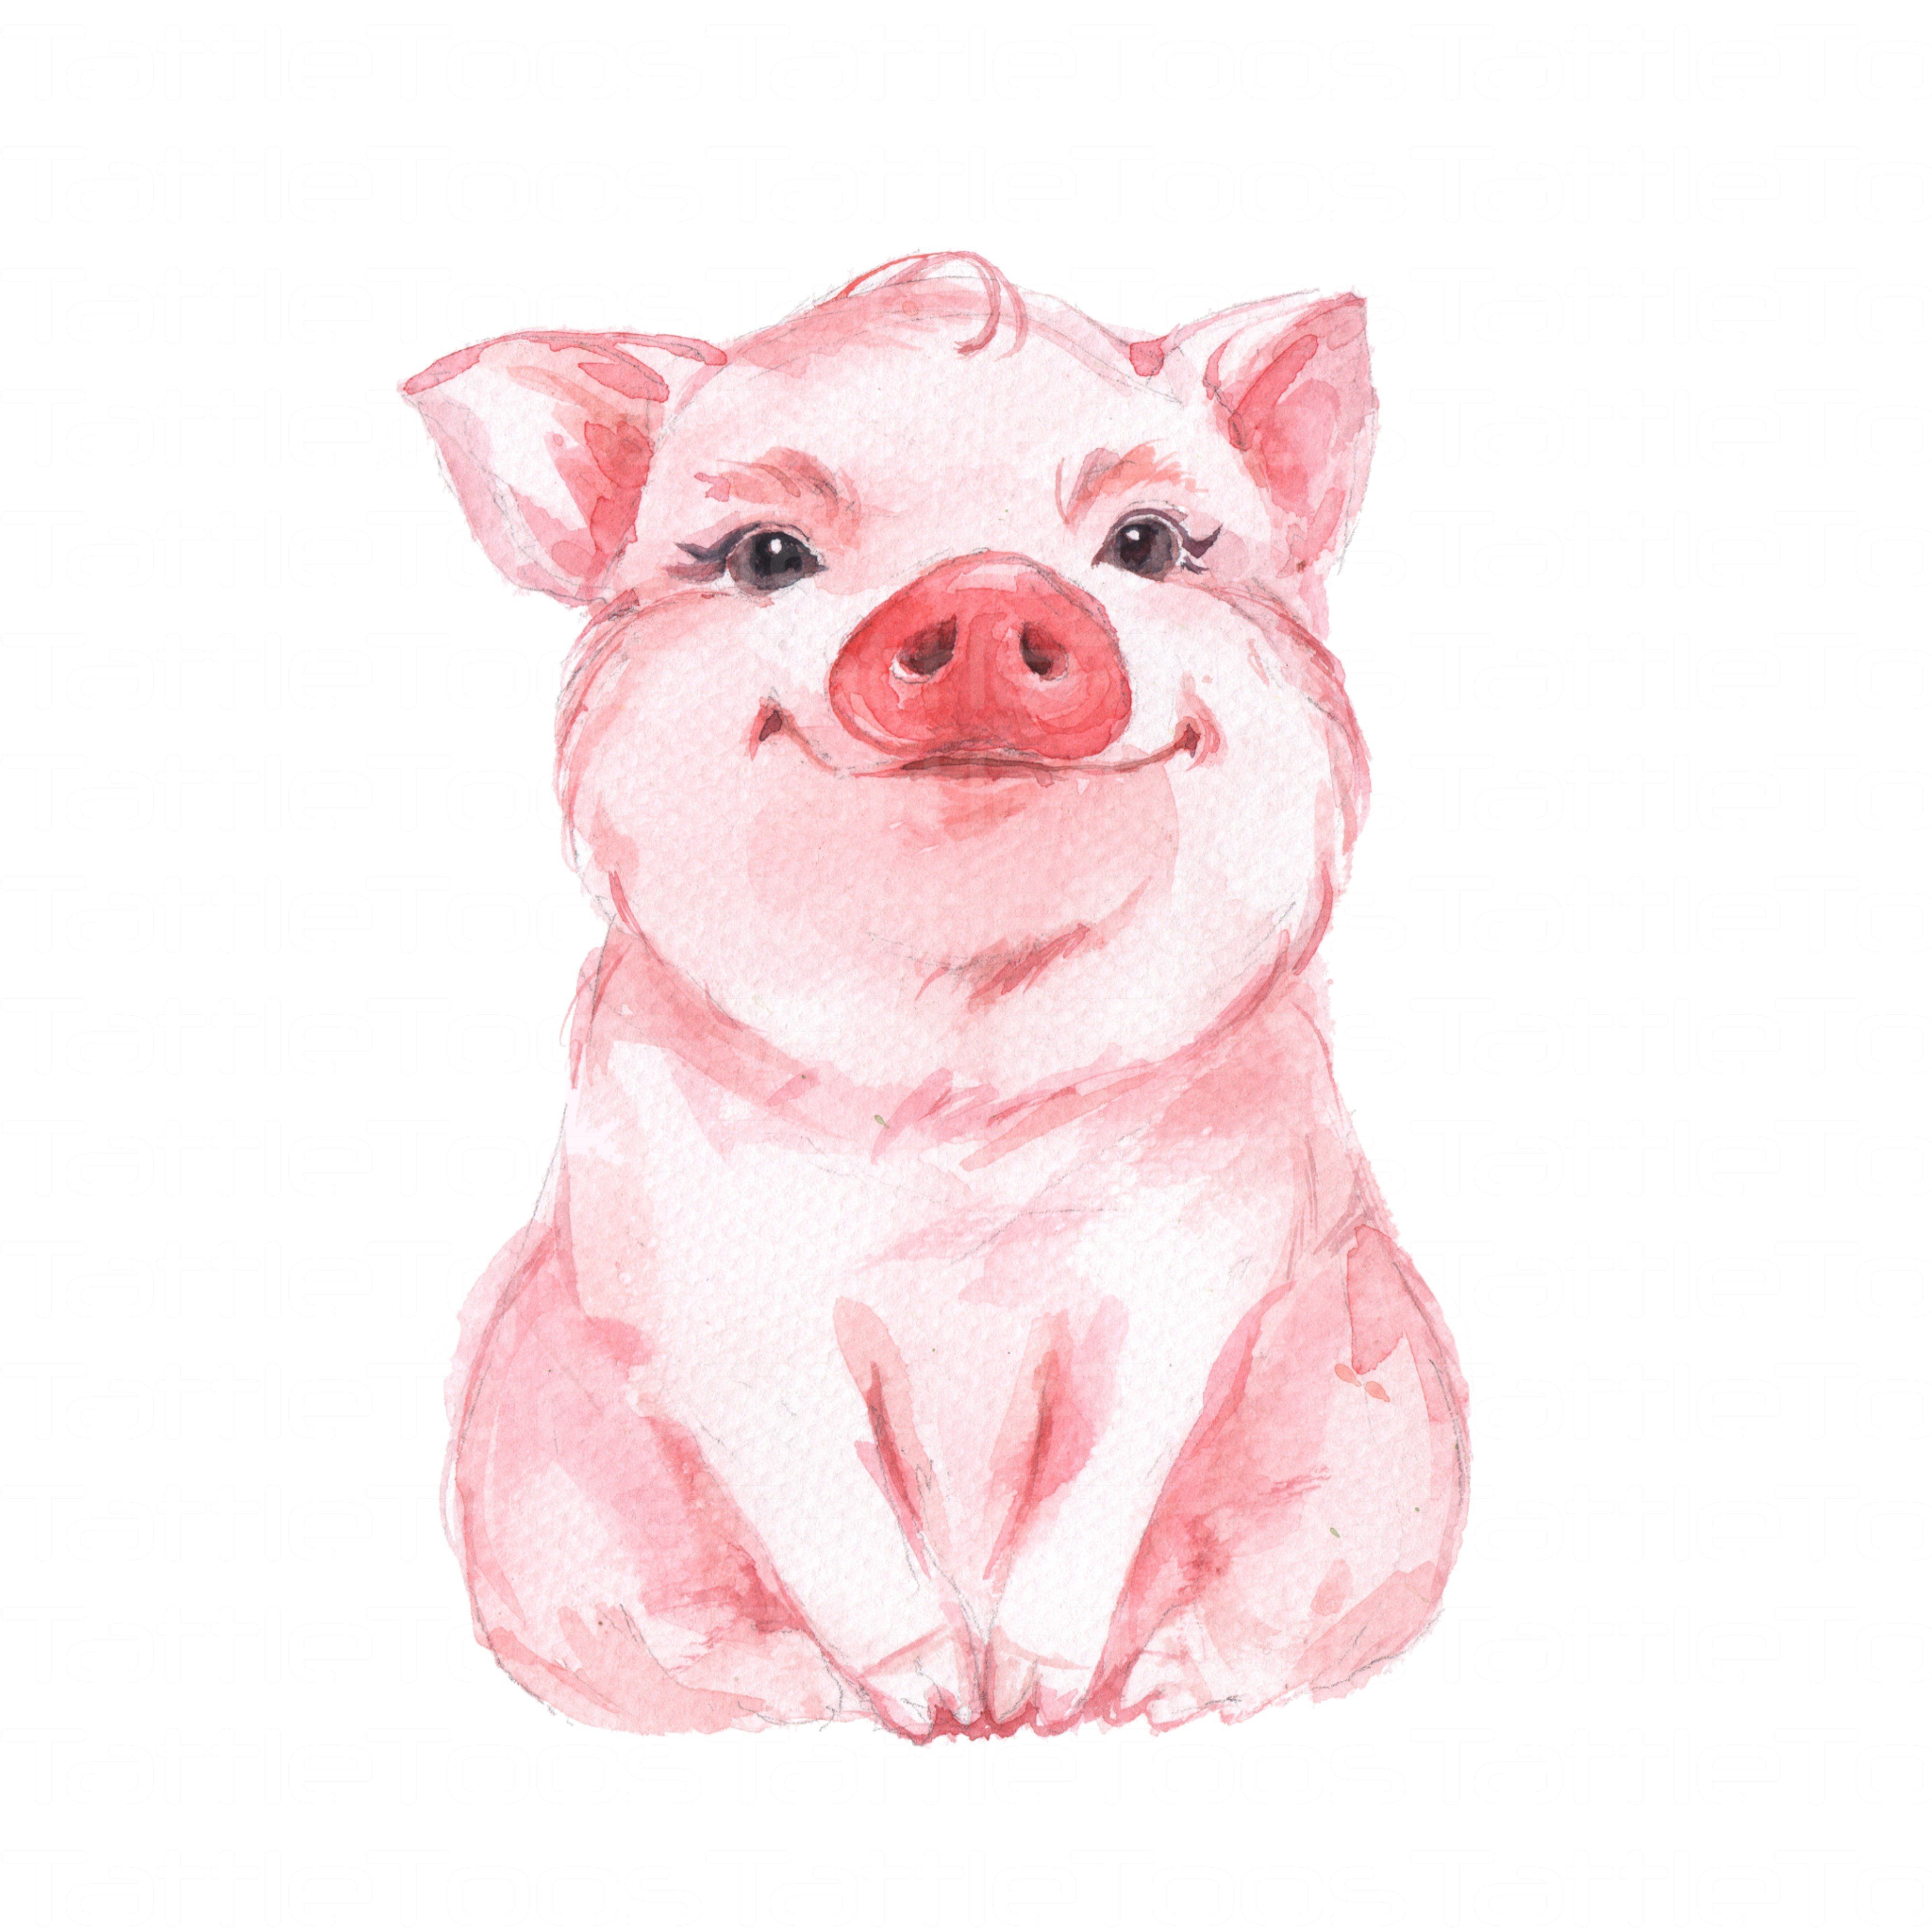 Cute Pig Drawing Art